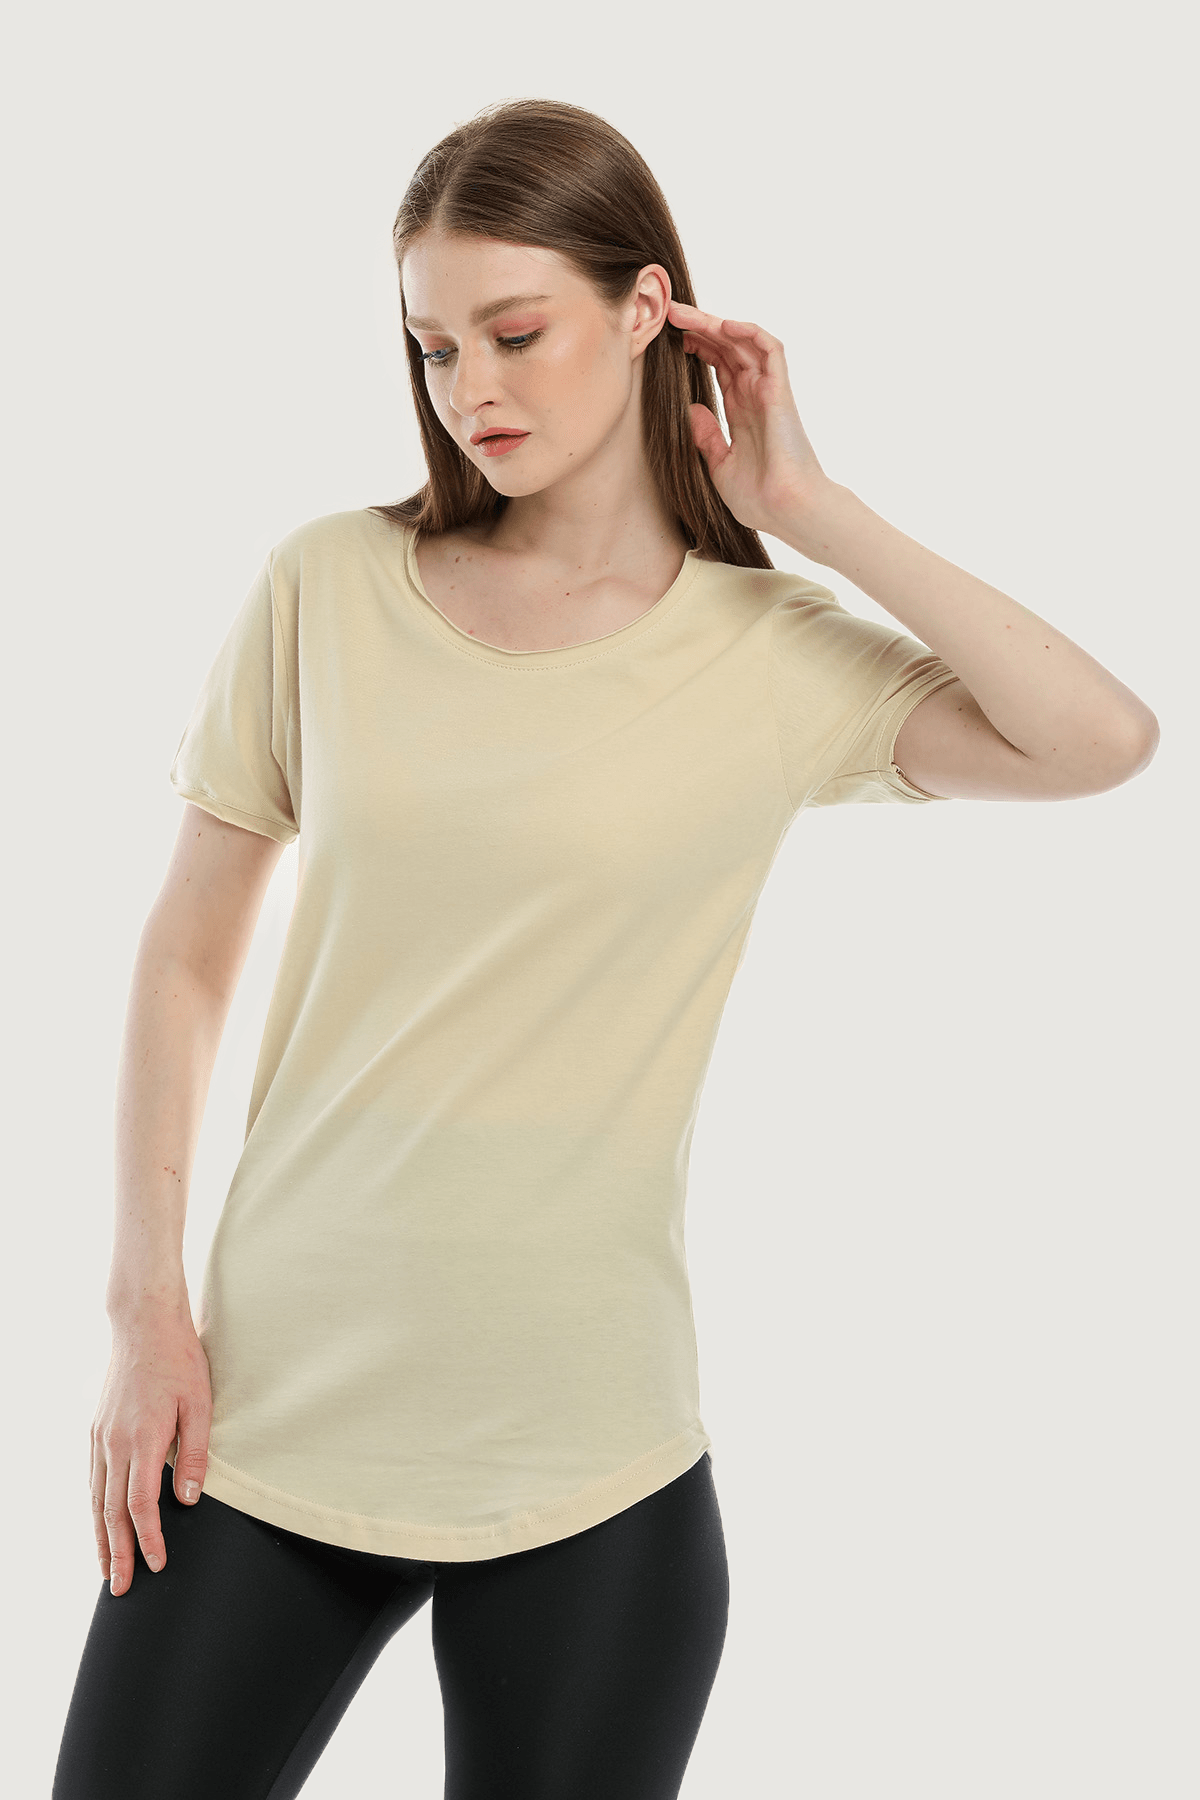 Camiseta básica holgada y cómoda para mujer - Crema